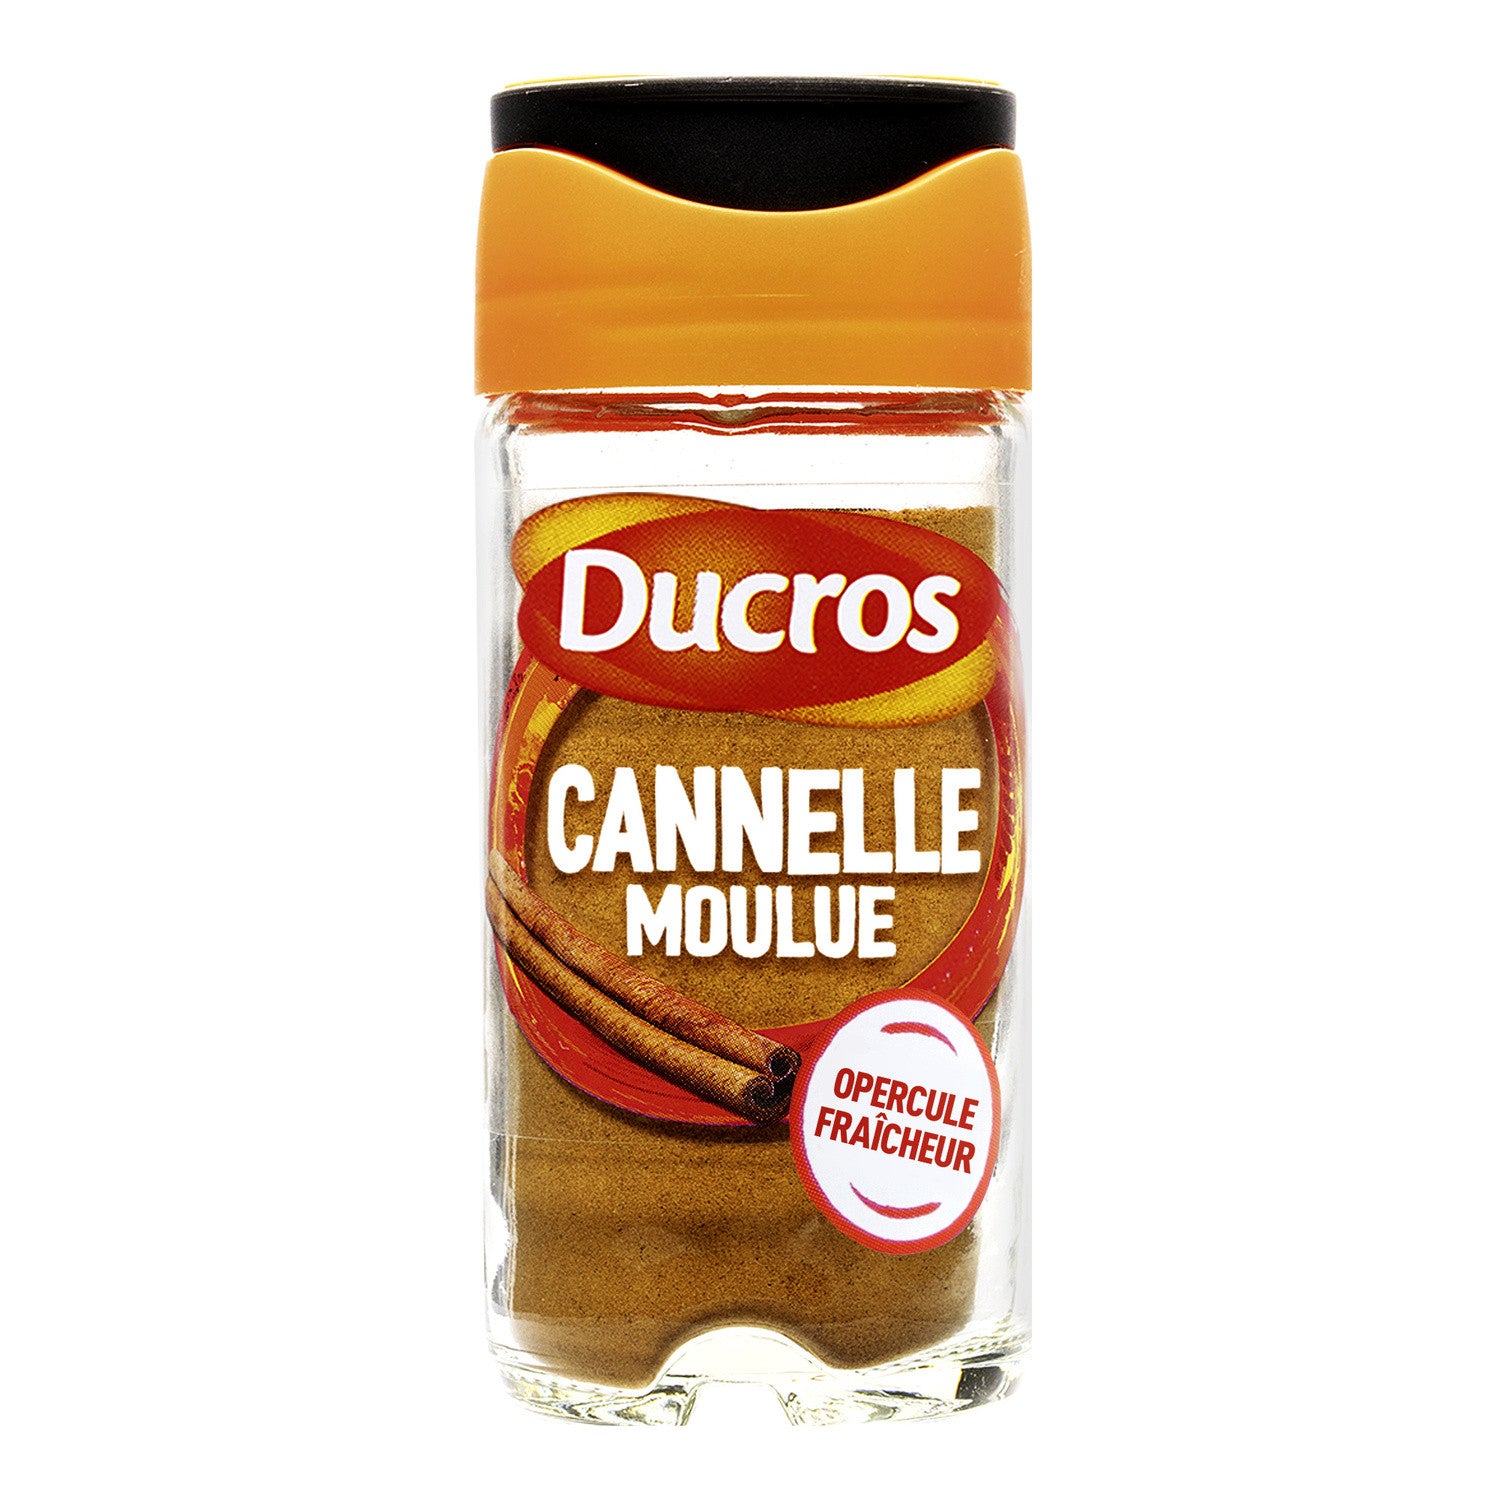 Cannelle moulue - Ducros - 39 g